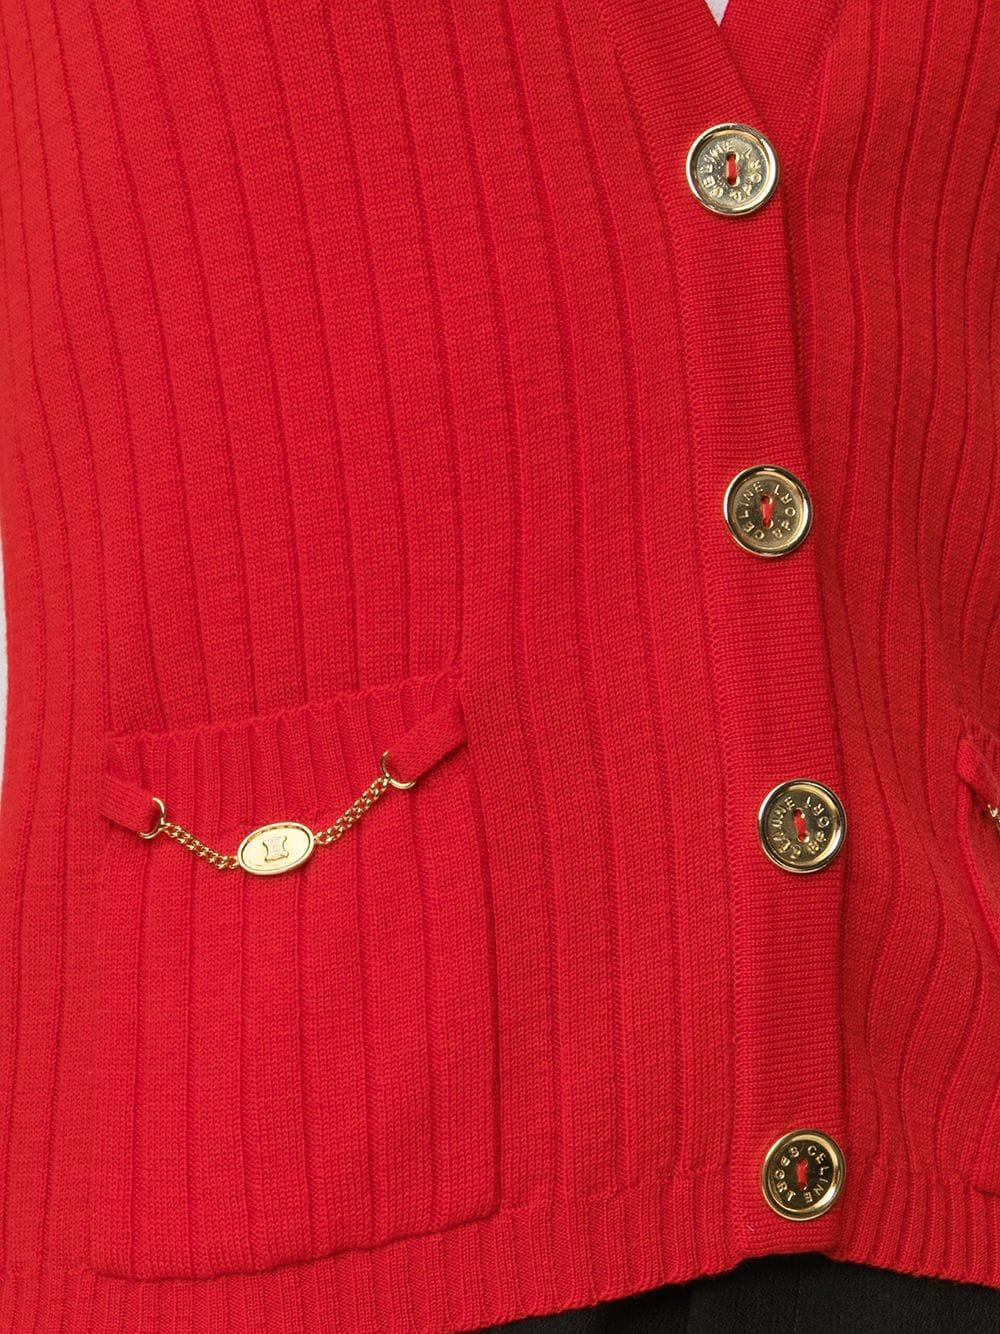 Gilet rouge vintage Céline, avec col en V et doubles poches sur le devant. Avec des boutons gravés de couleur or (le bouton de remplacement interne est toujours présent) et des petites chaînes dorées sur les poches.	

Couleur : Rouge/